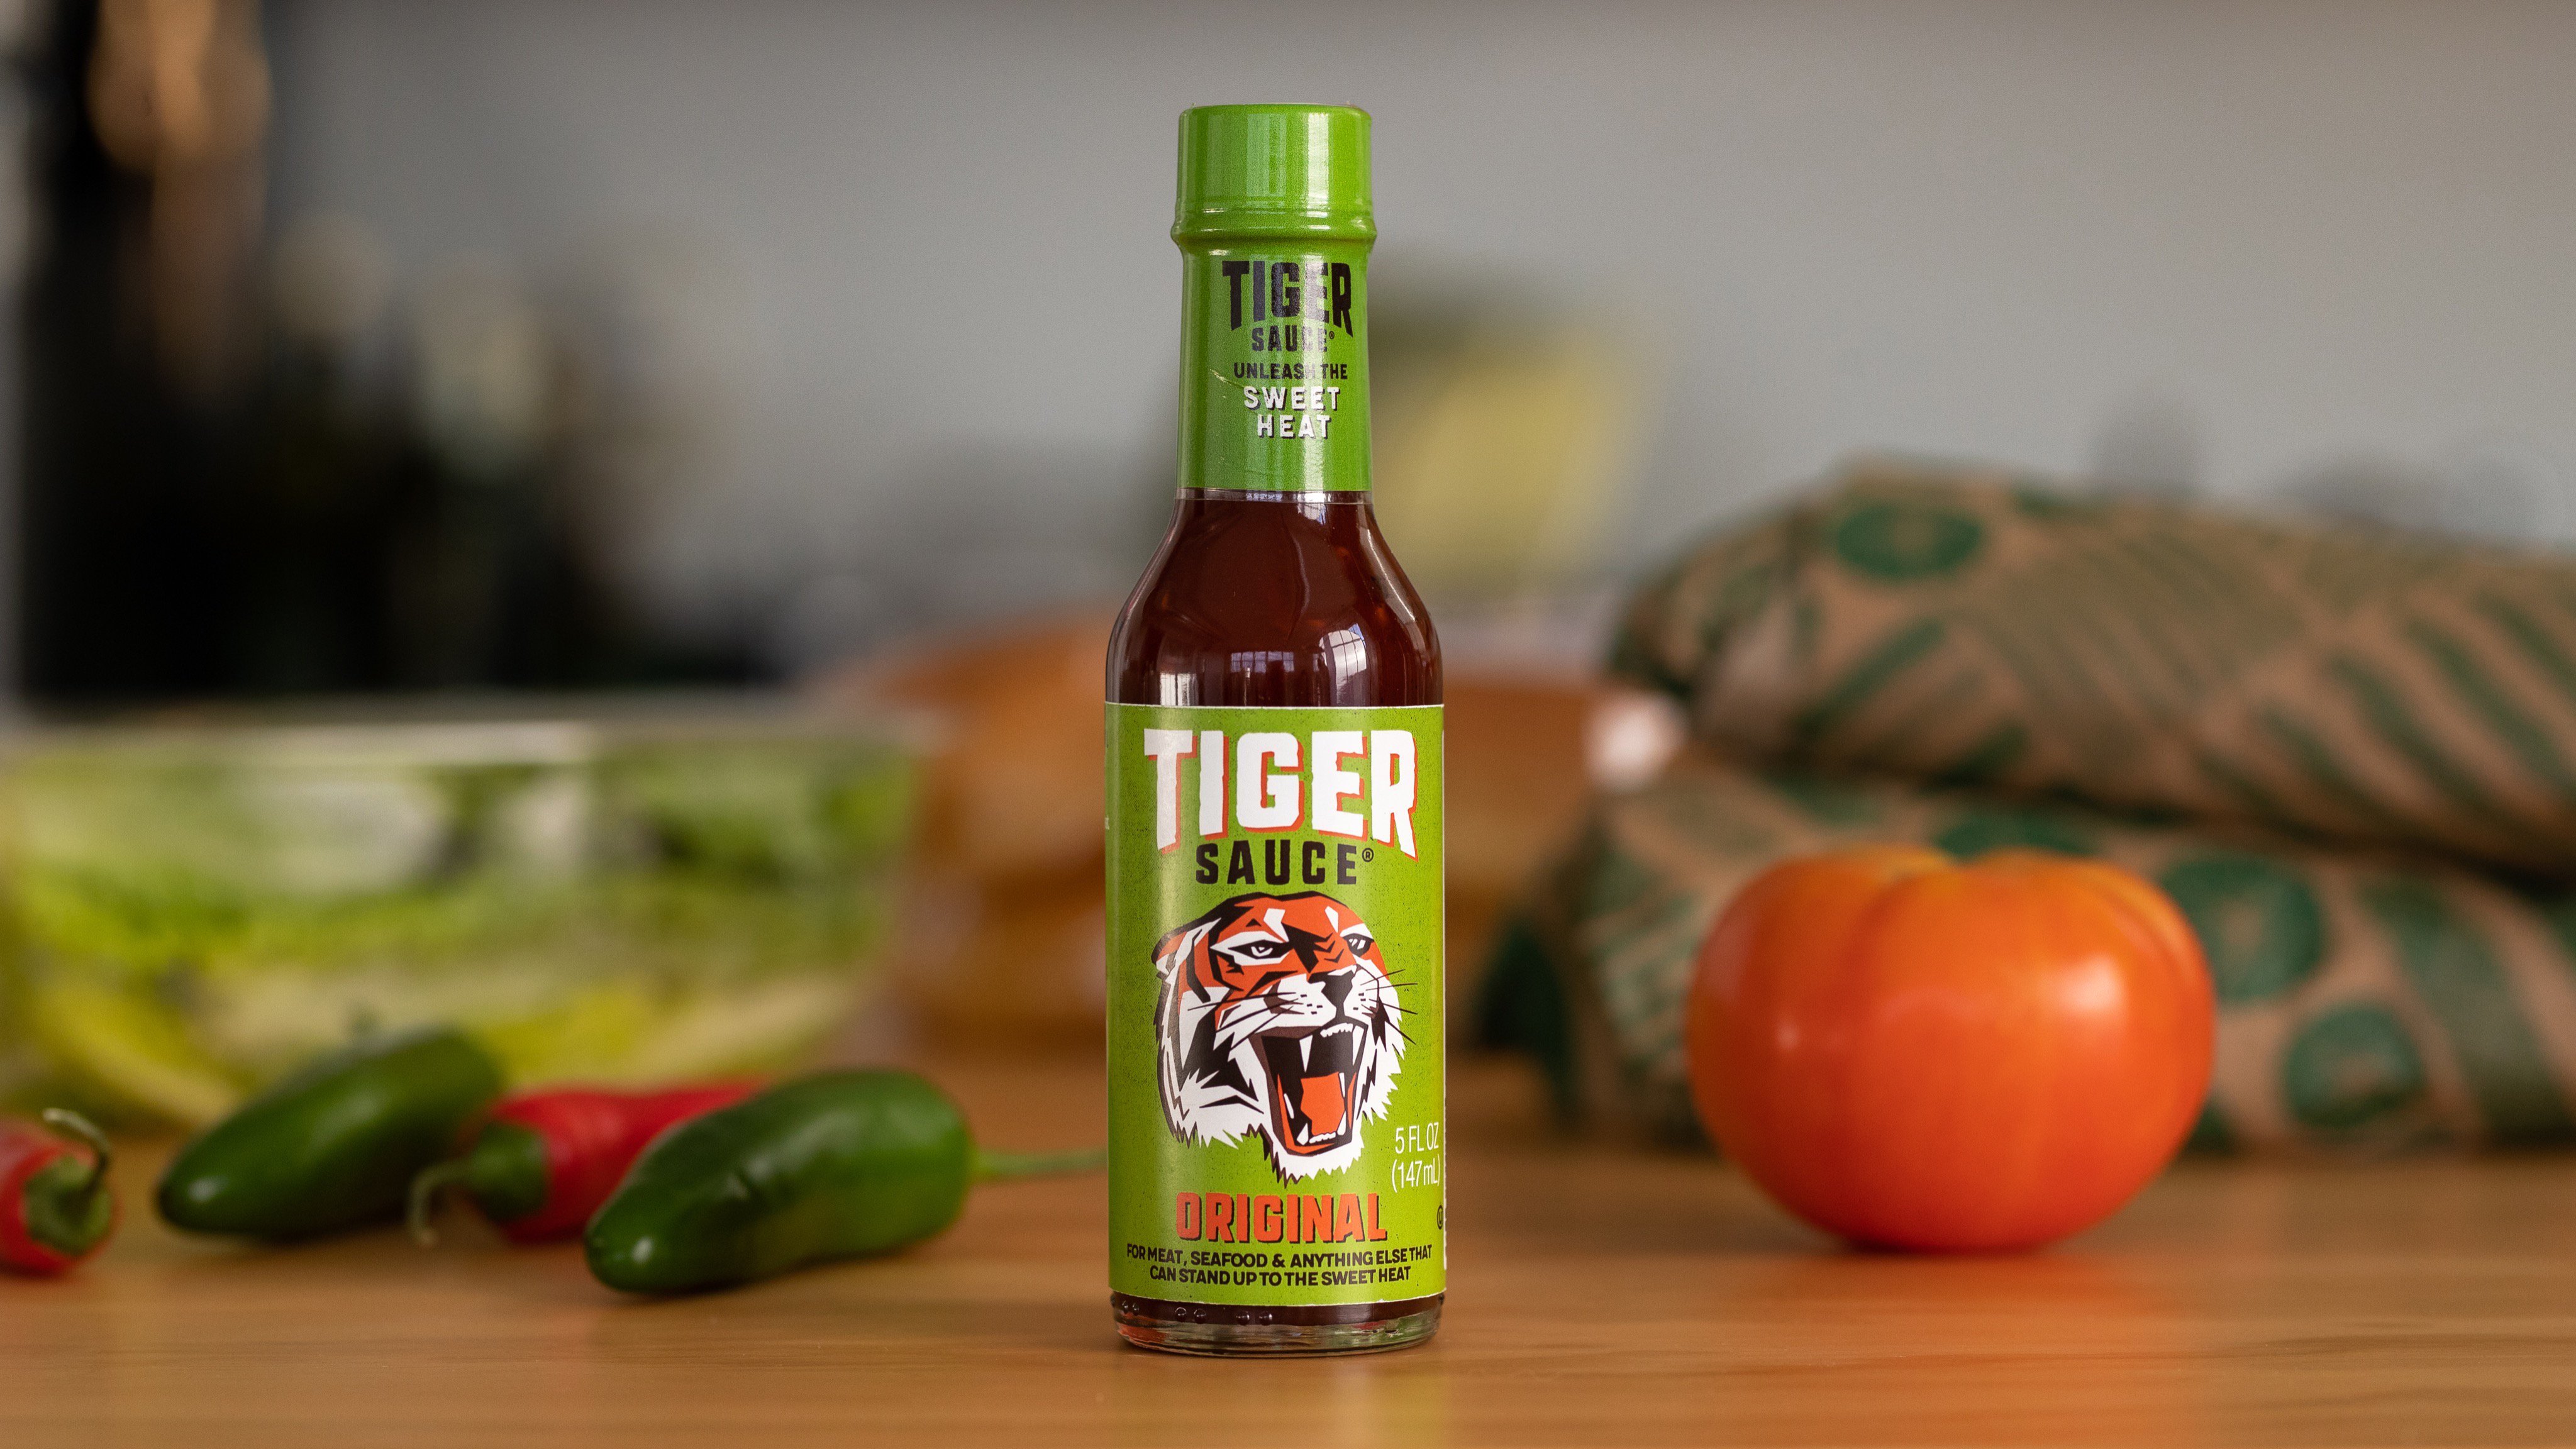 Tiger Sauce Original Sauce, 5 fl oz